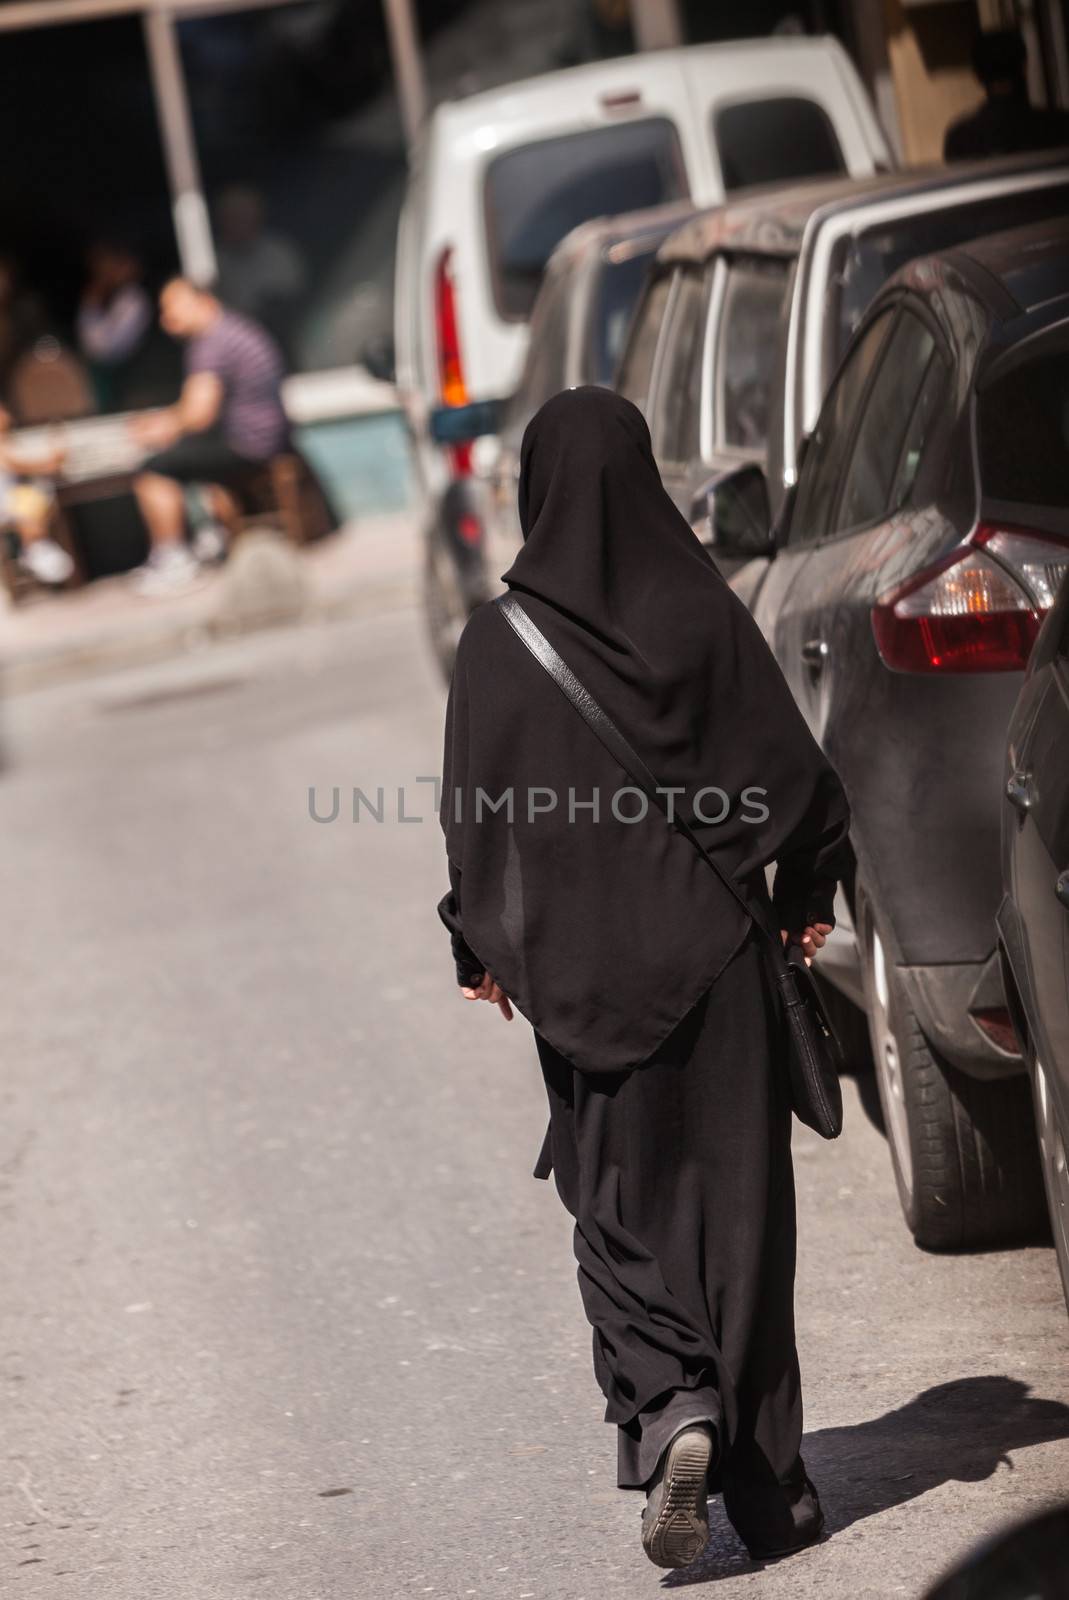 Muslim woman in Istanbul neighborhood wearing a hijab